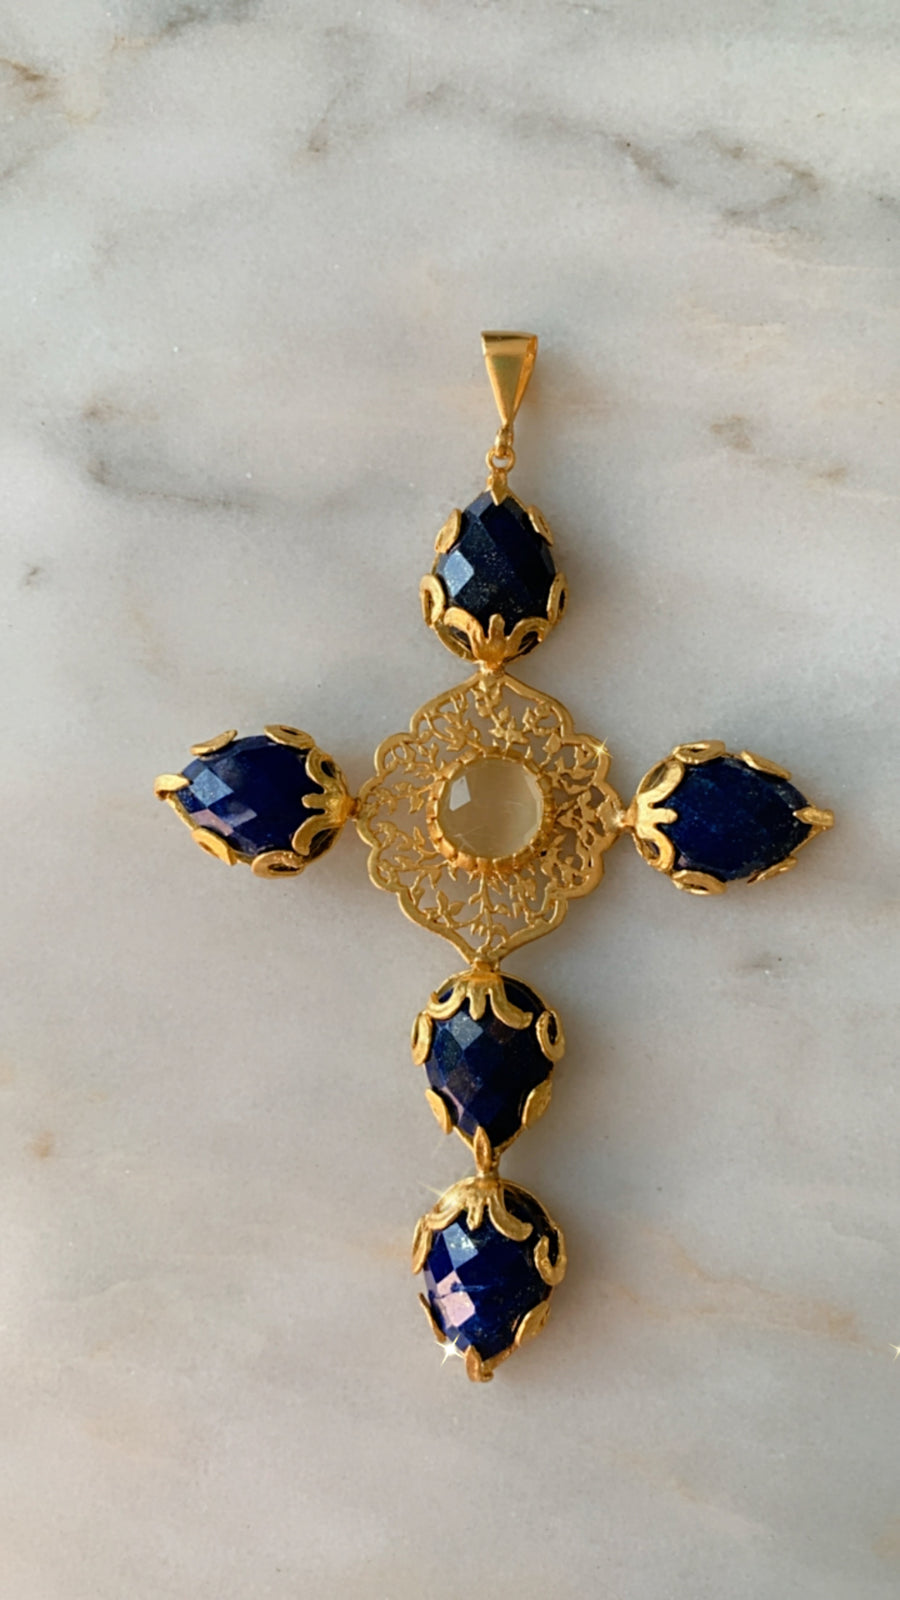 Prisna Byzantine Cross Necklace